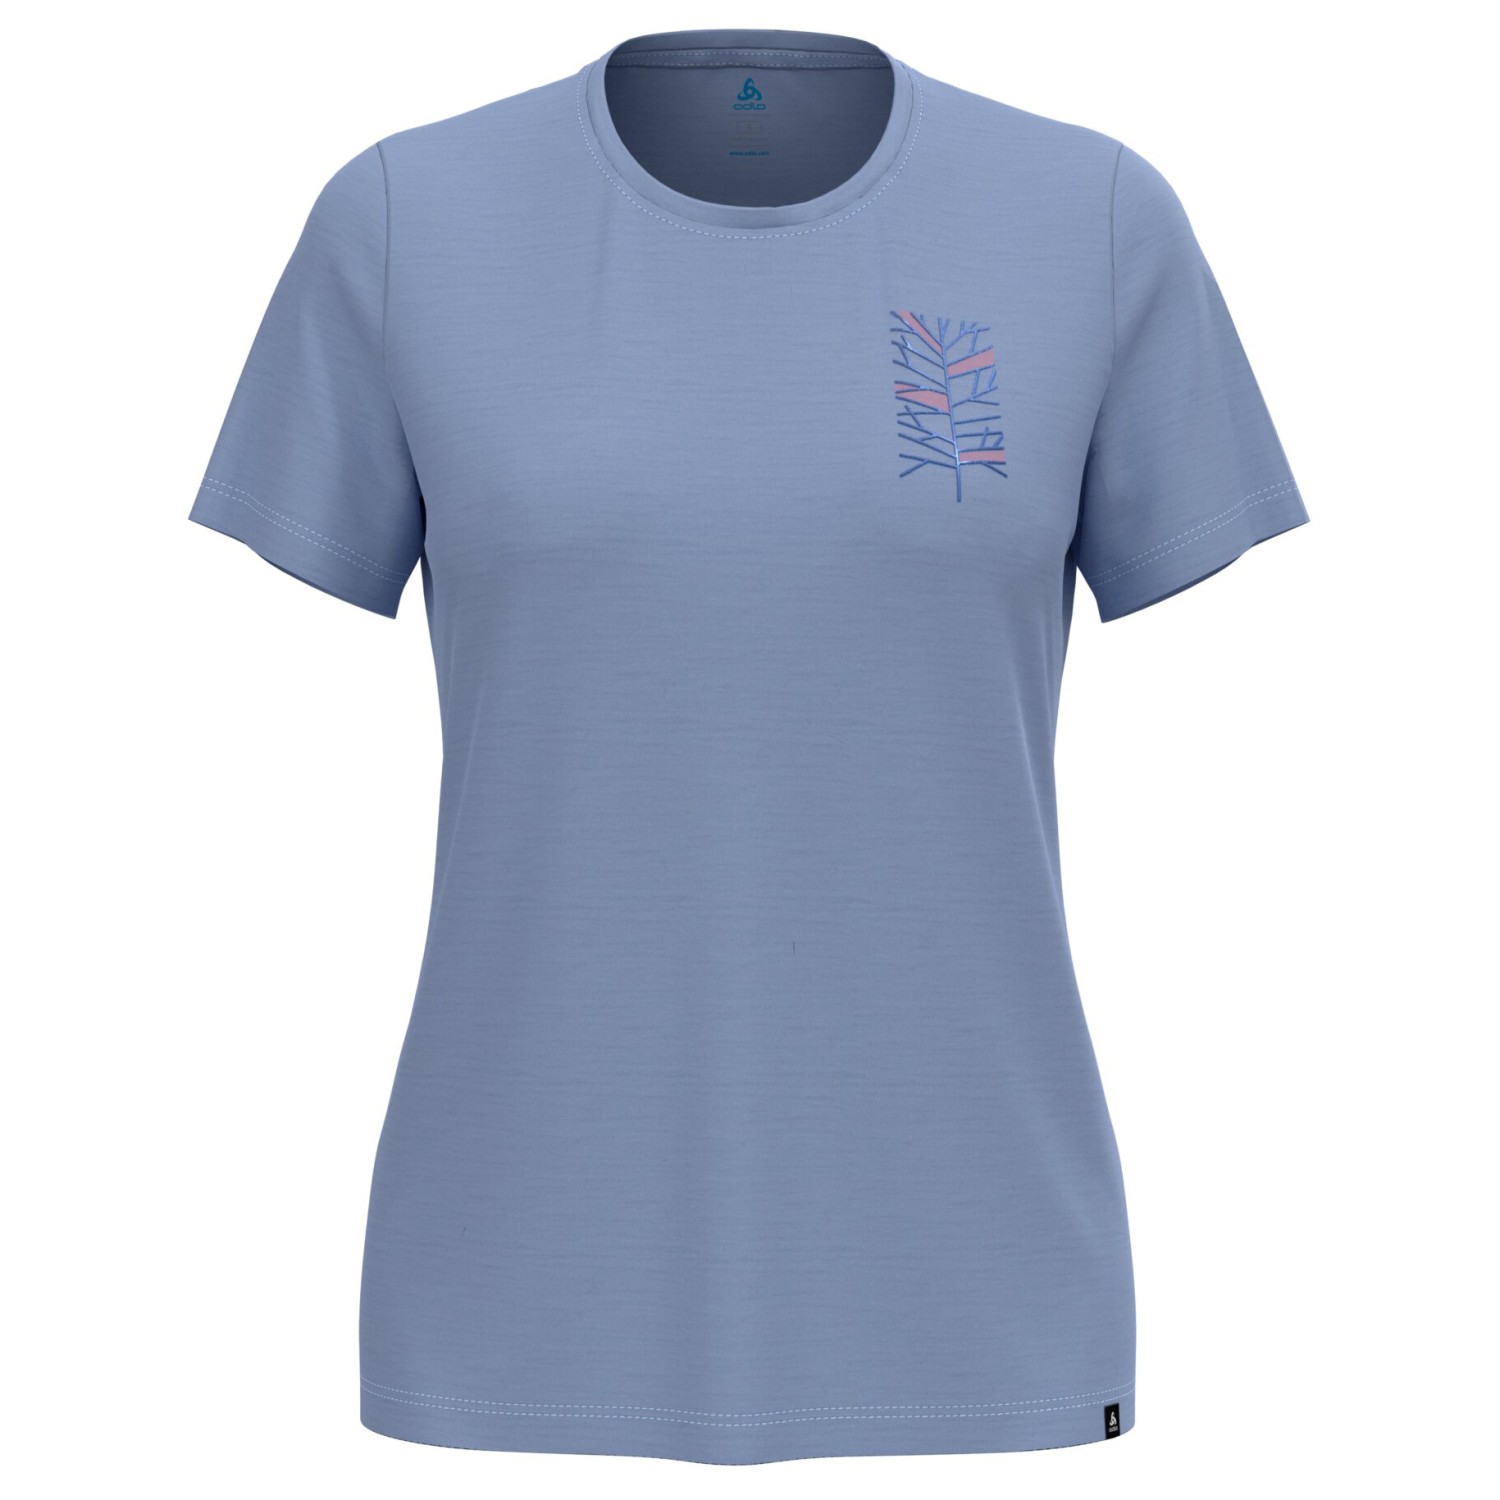 Рубашка из мериноса Odlo Women's Ascent Merino 160 Tree Crew Neck S/S, цвет Blue Heron цена и фото